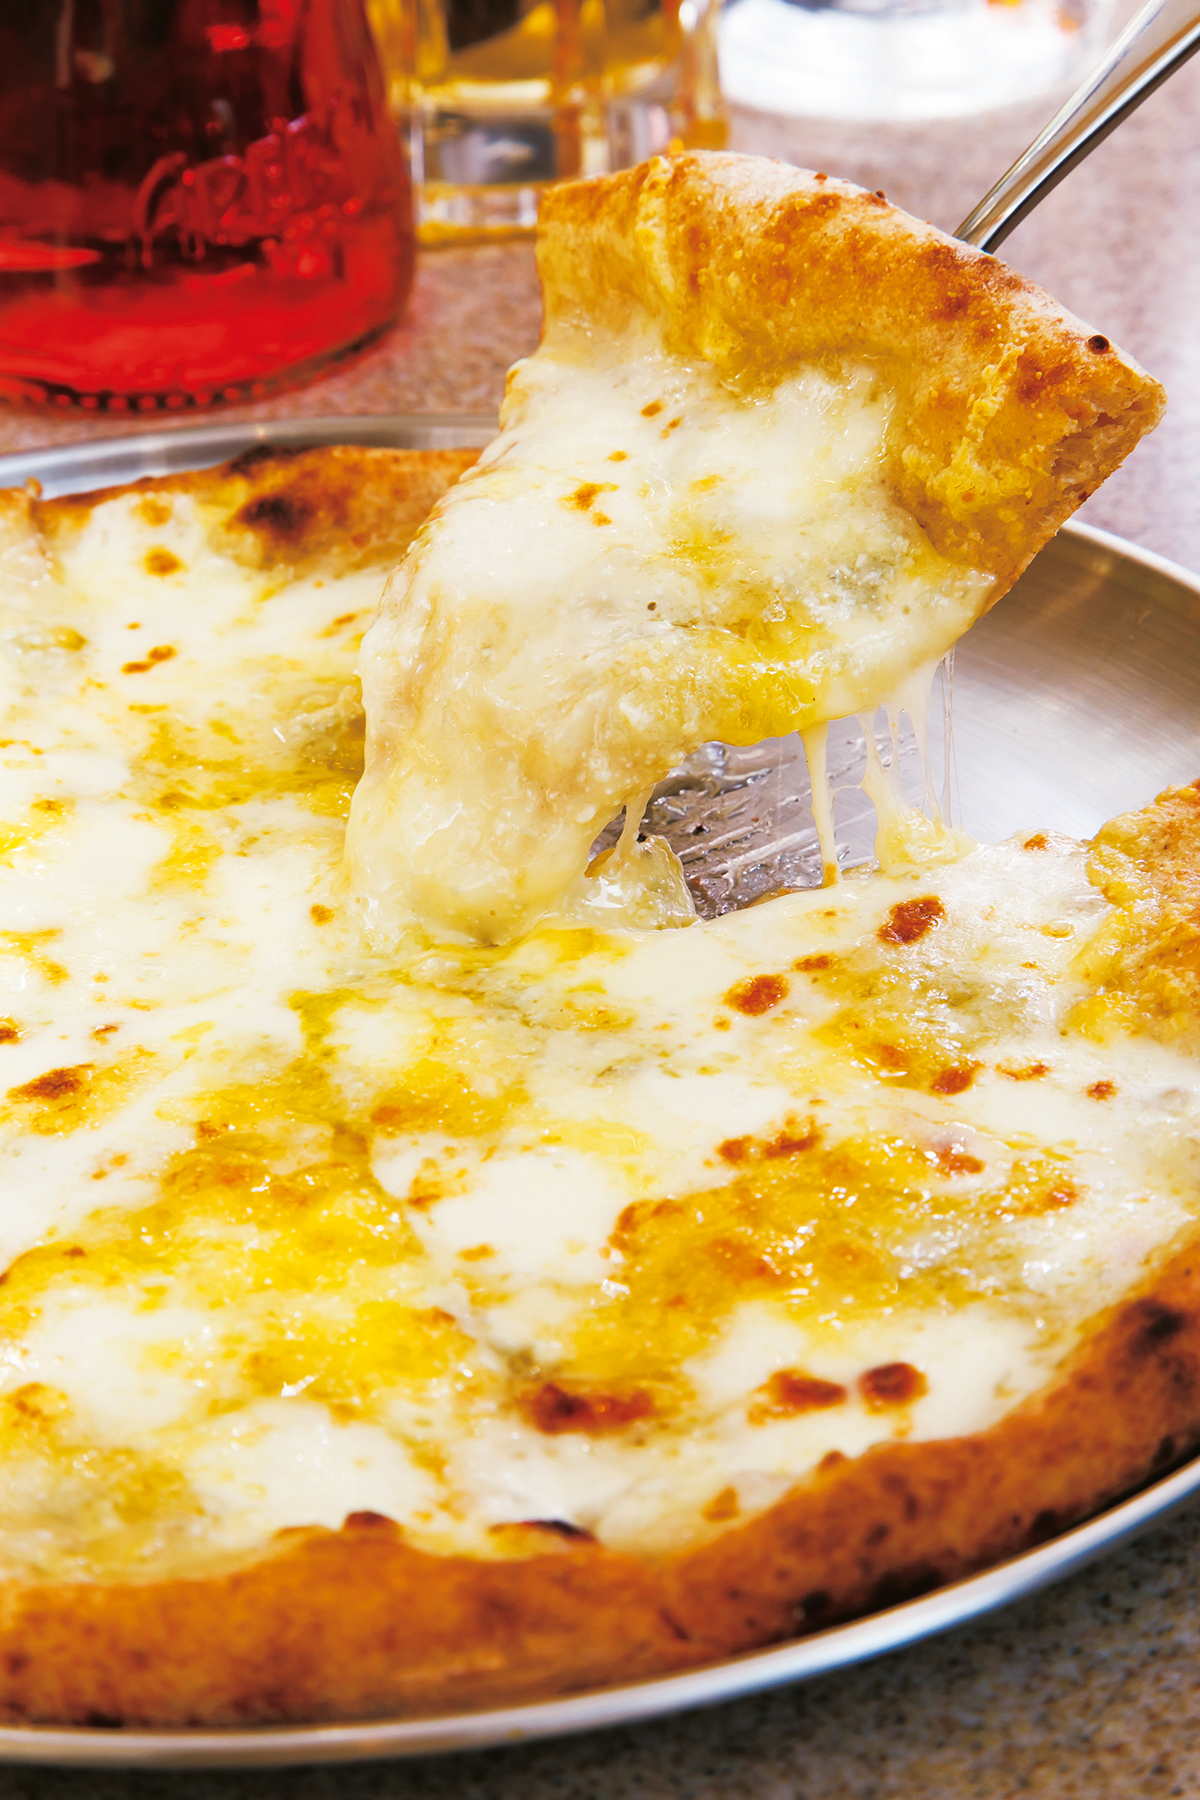 『CRAZY　PIZZA』<br />
クレイジーチンクエフォルマッジ5500円<br />
ゴルゴンゾーラ、タレッジオ、ストラッキーノなど５種類の最高級チーズをふんだんに使用。有機アプリコットジャムか北海道産ハチミツがつく